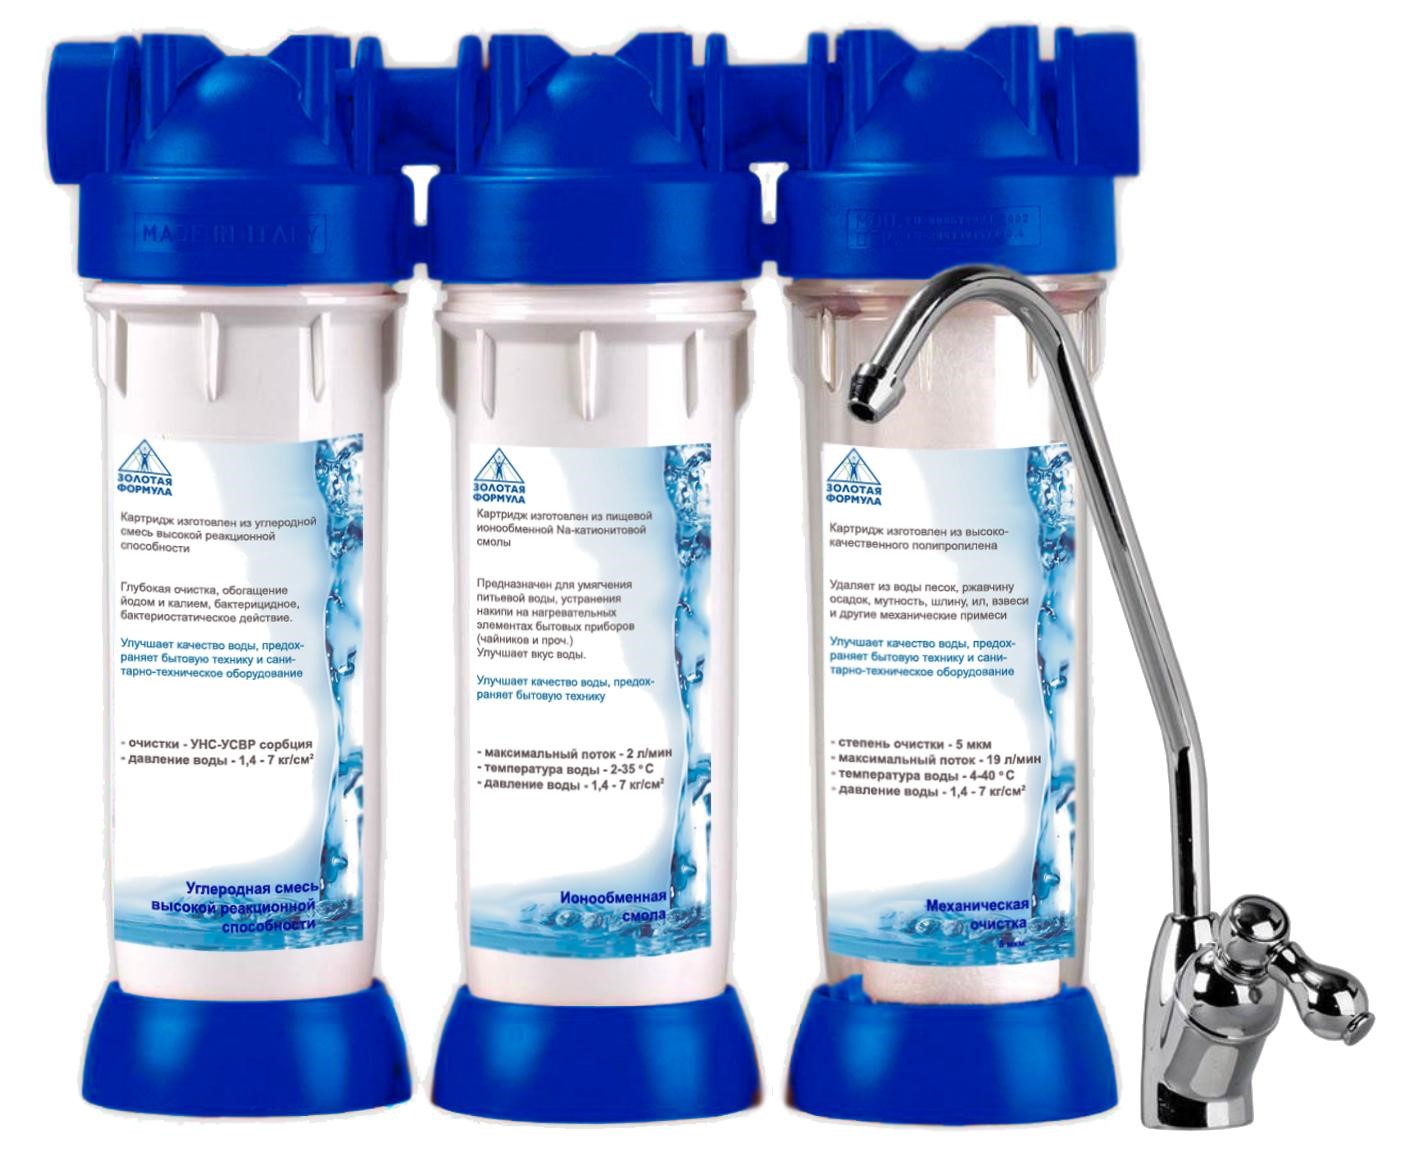 Подобрать очистку воды. Фильтр Аквафор 4 ступени очистки. Аквафор Осмо-Кристалл 50. Фильтр очистки воды посудомойкеmfd45s370. Матрикс фильтр для воды.